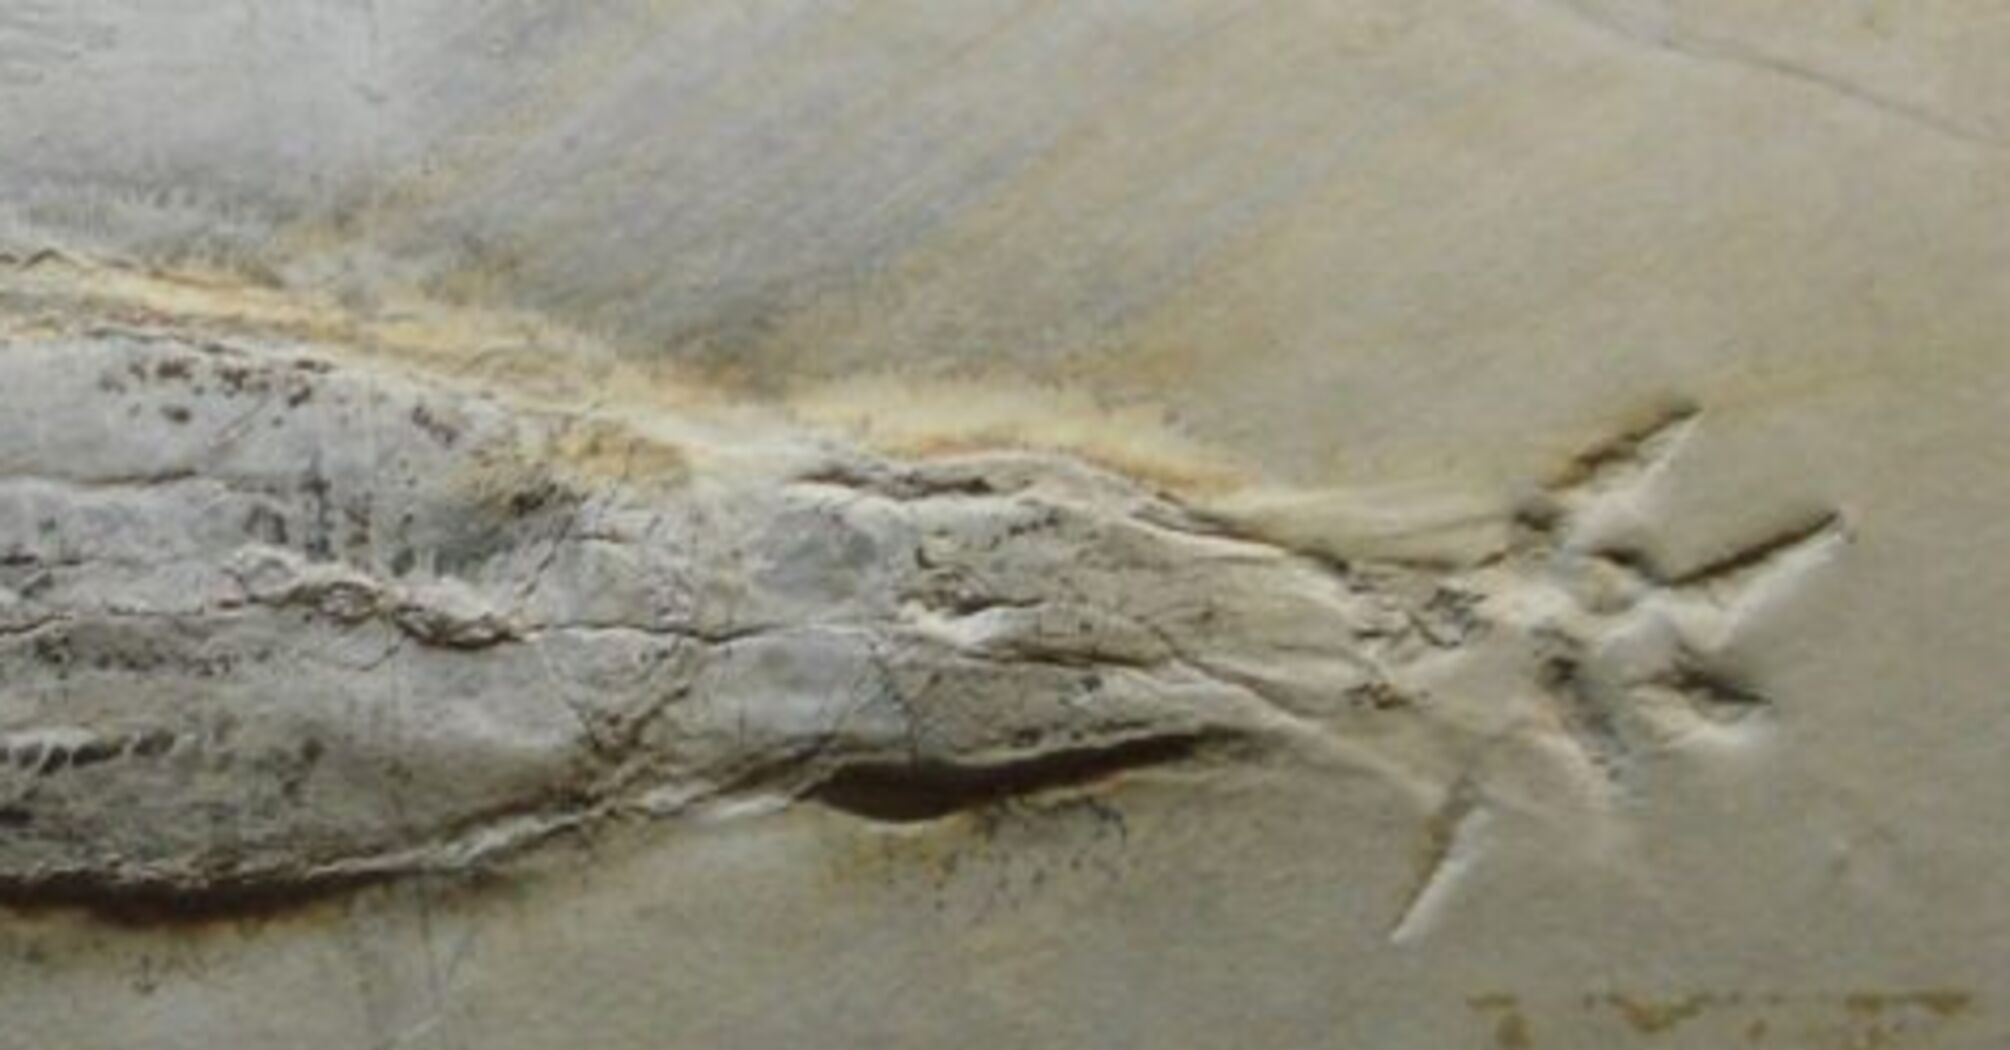 Окаменелость кальмара-вампира с добычей обнаружили в Люксембурге: жил на Земле 180 млн лет назад (фото)